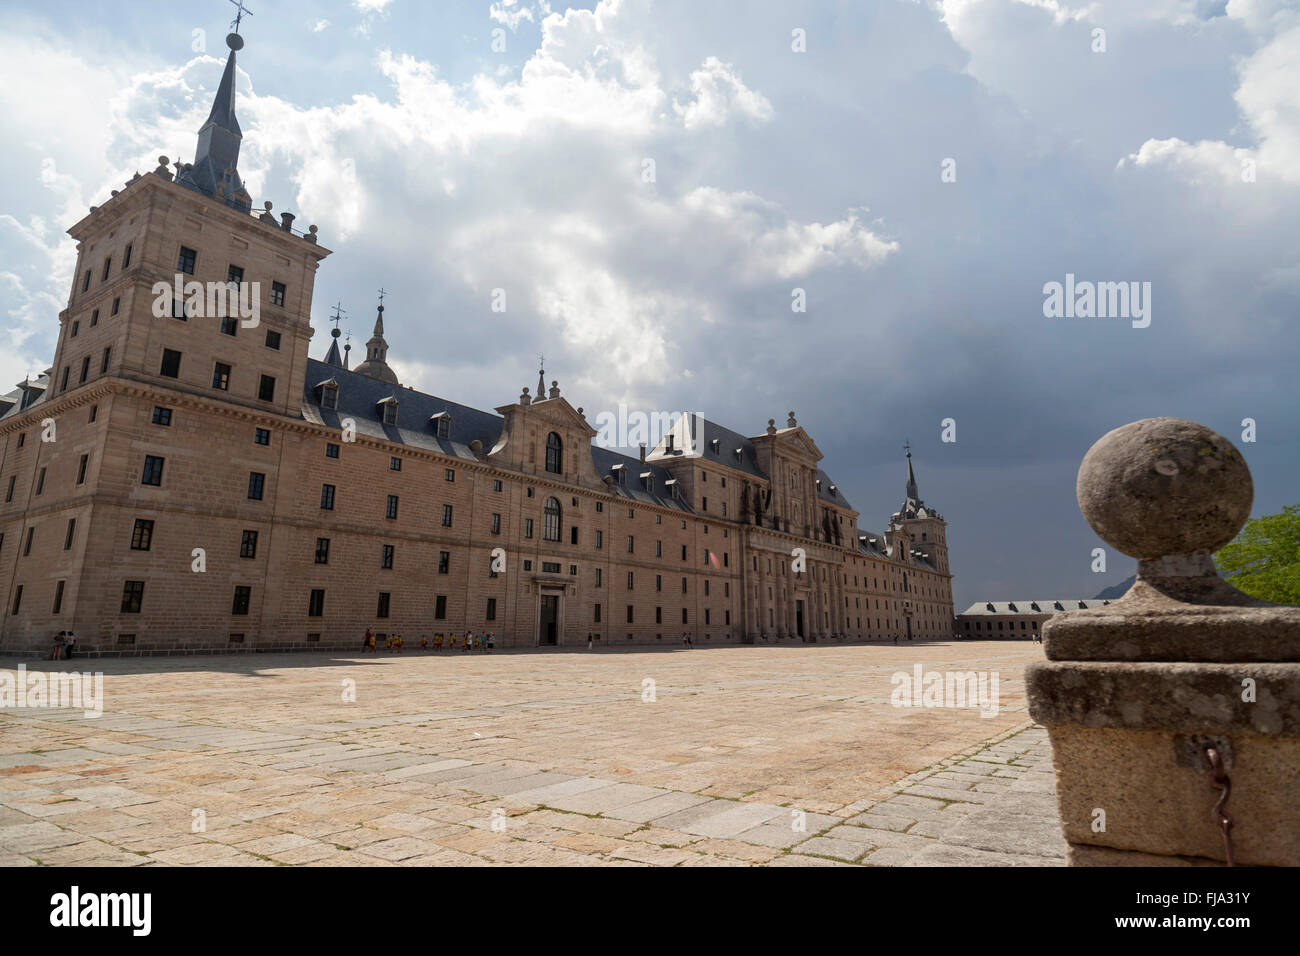 Real Sitio de San Lorenzo de El Escorial,Madrid,Spain. Stock Photo